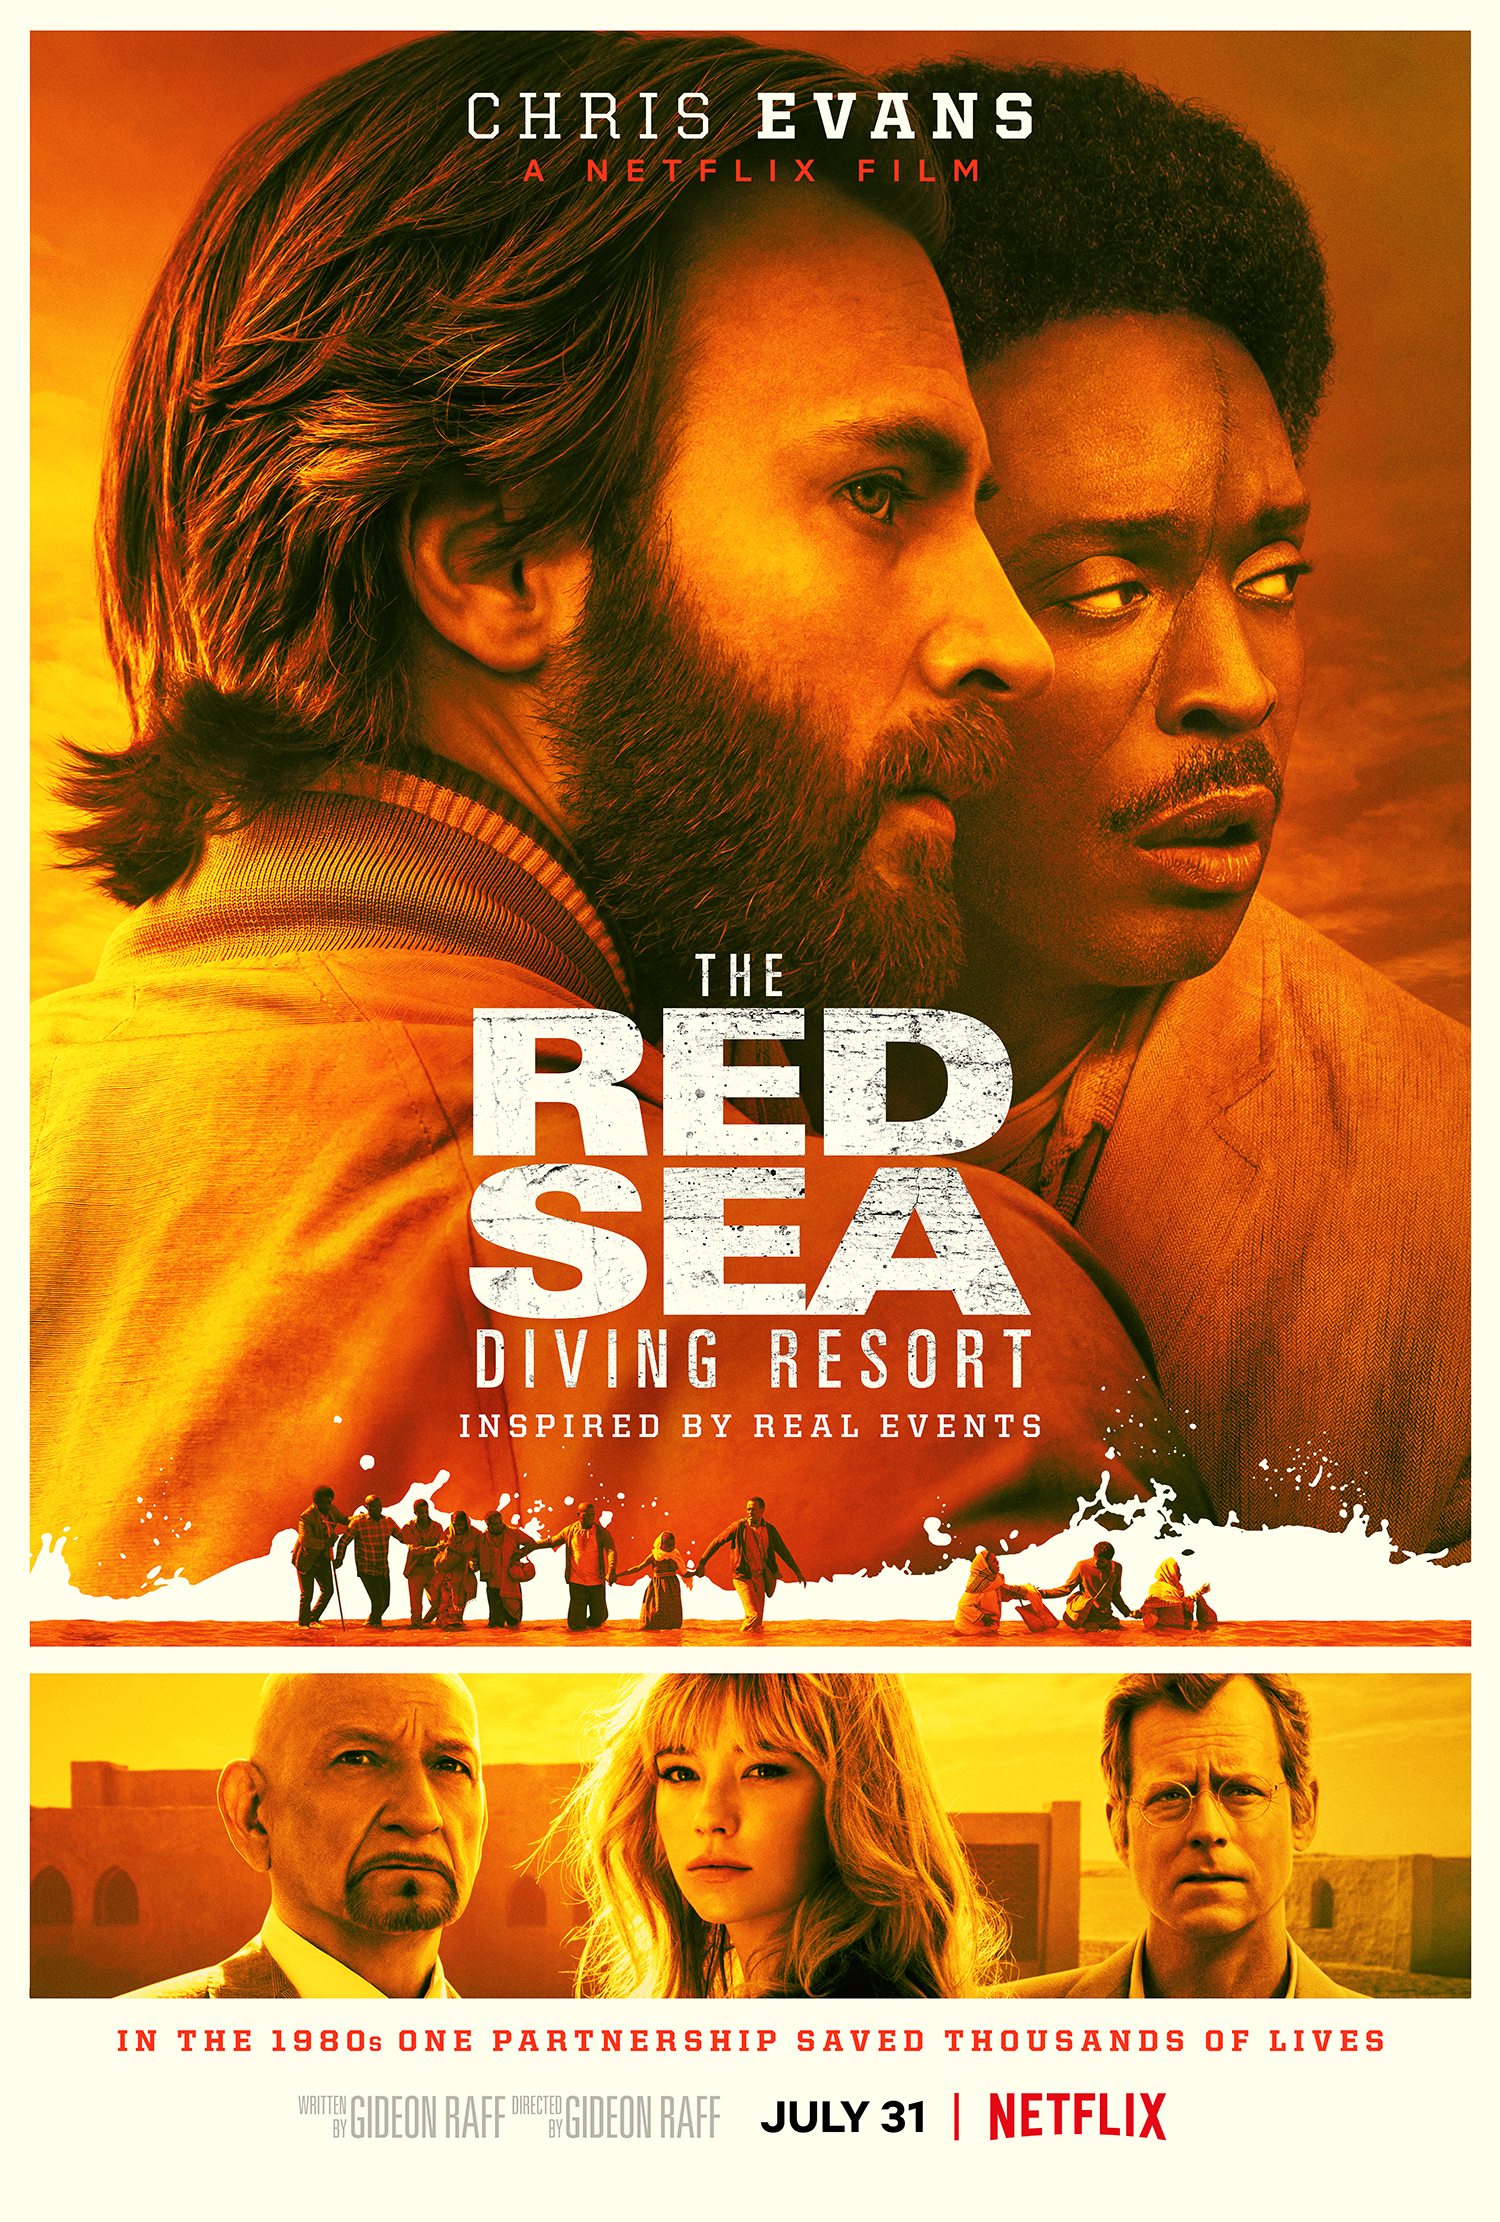 ดูหนังออนไลน์ฟรี The Red Sea Diving Resort (2019) ปฏิบัติการแหวกทะเลแดง หนังเต็มเรื่อง หนังมาสเตอร์ ดูหนังHD ดูหนังออนไลน์ ดูหนังใหม่